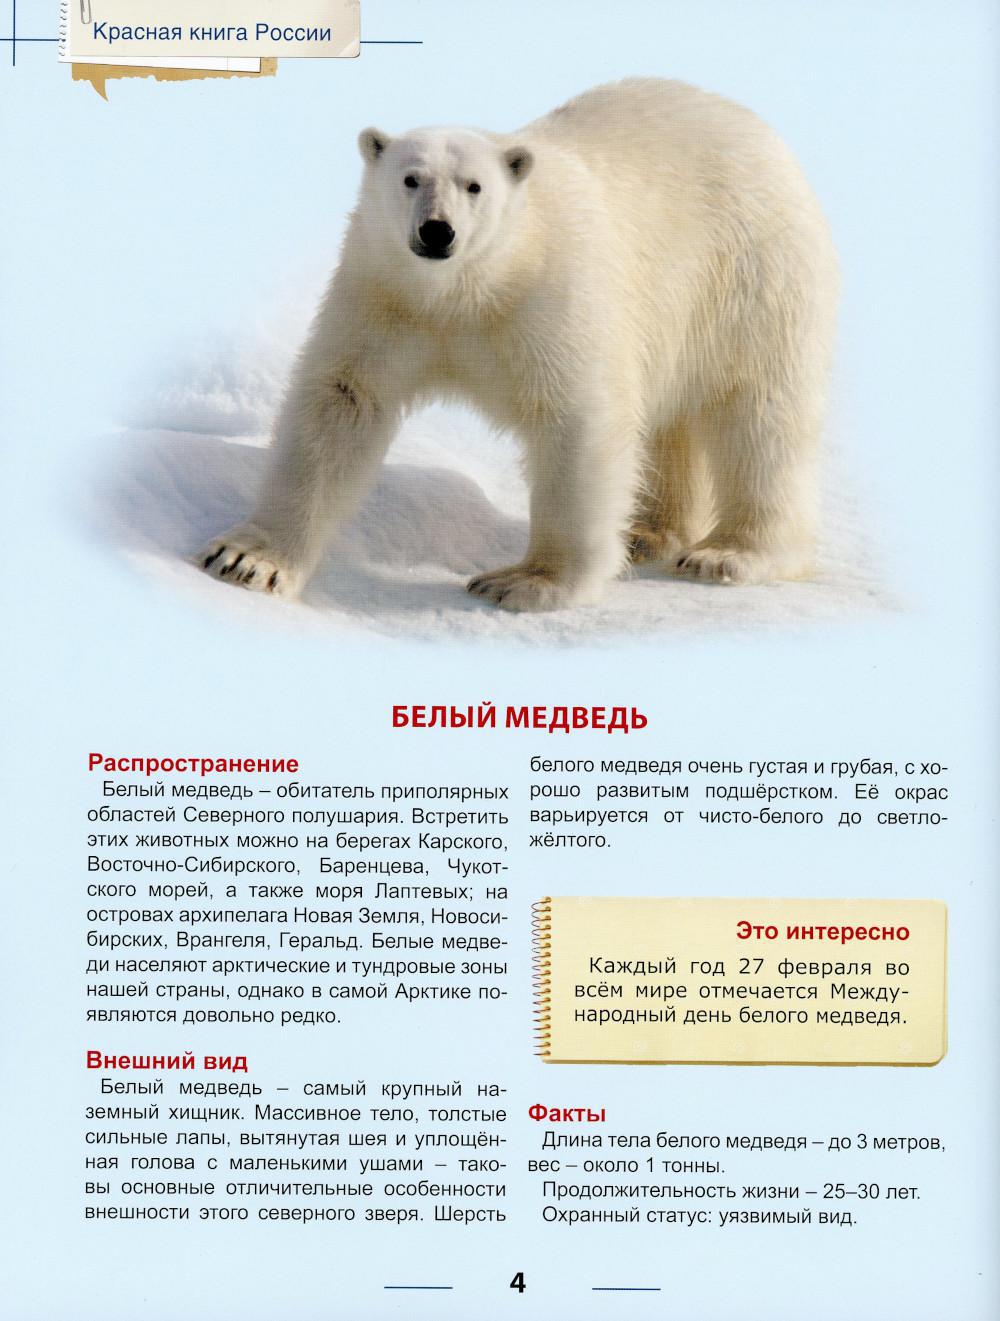 Белый медведь красная книга